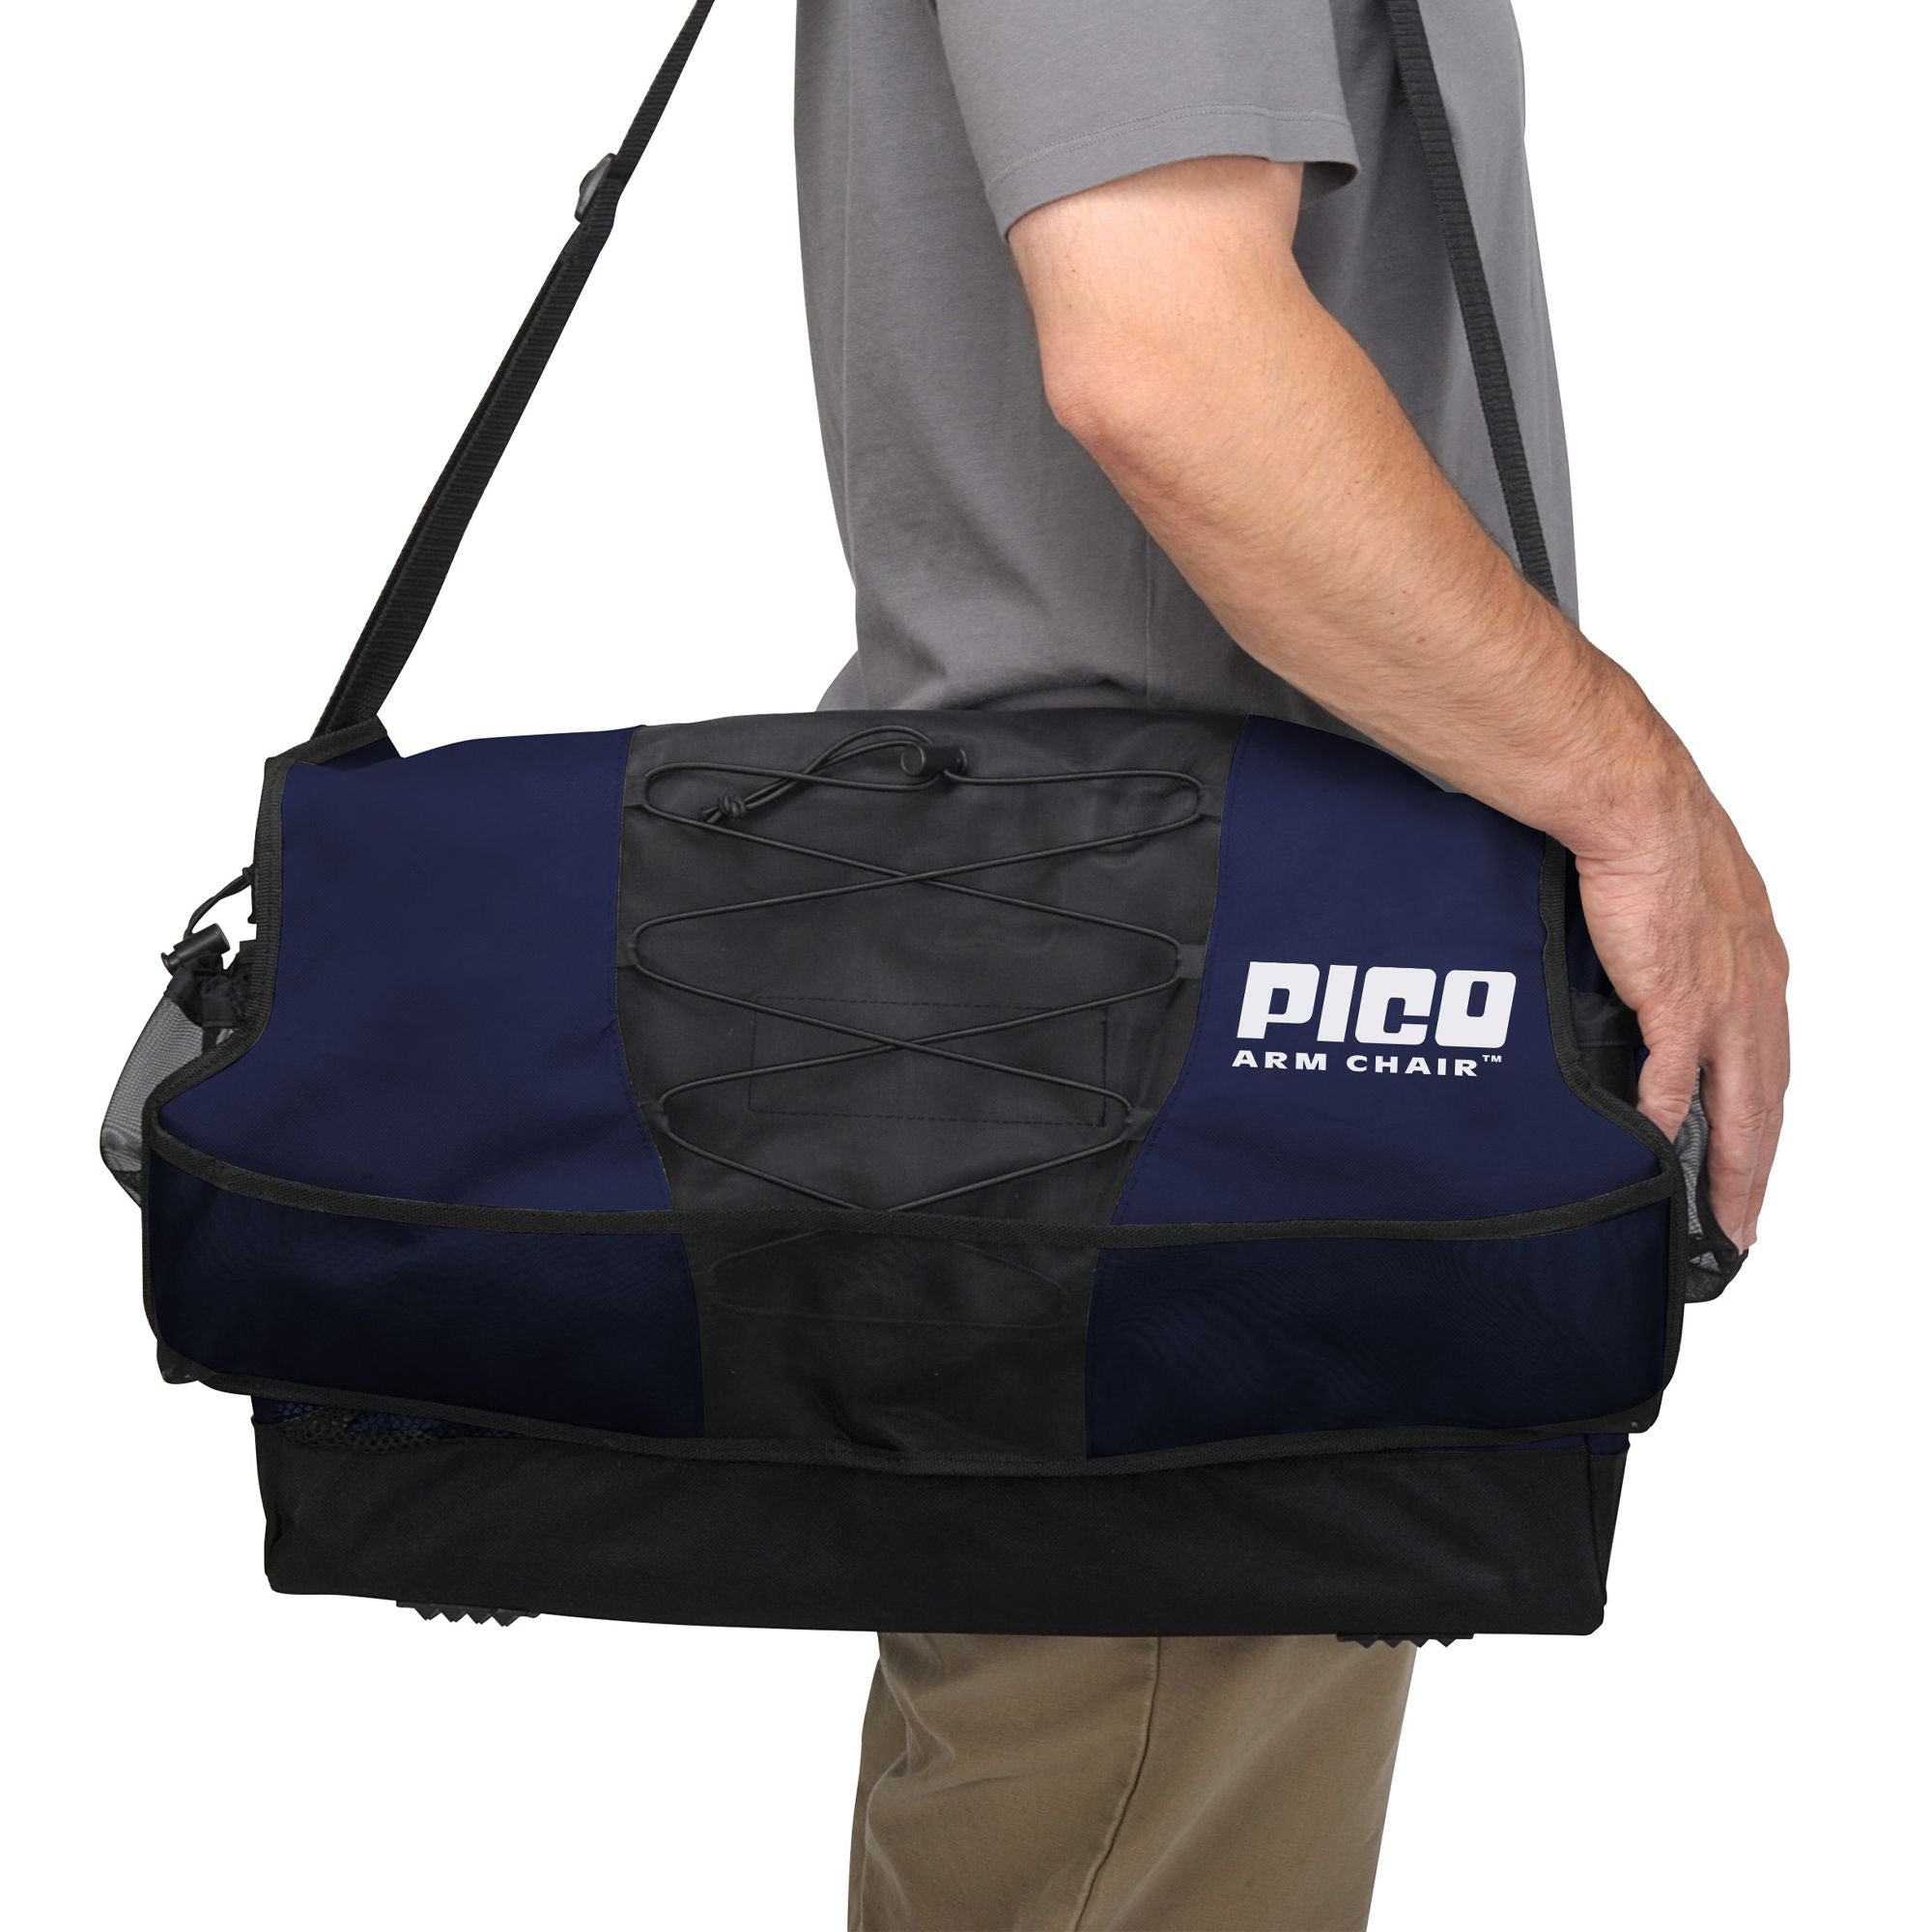 PICO Arm Chair, Indigo, Carry Bag